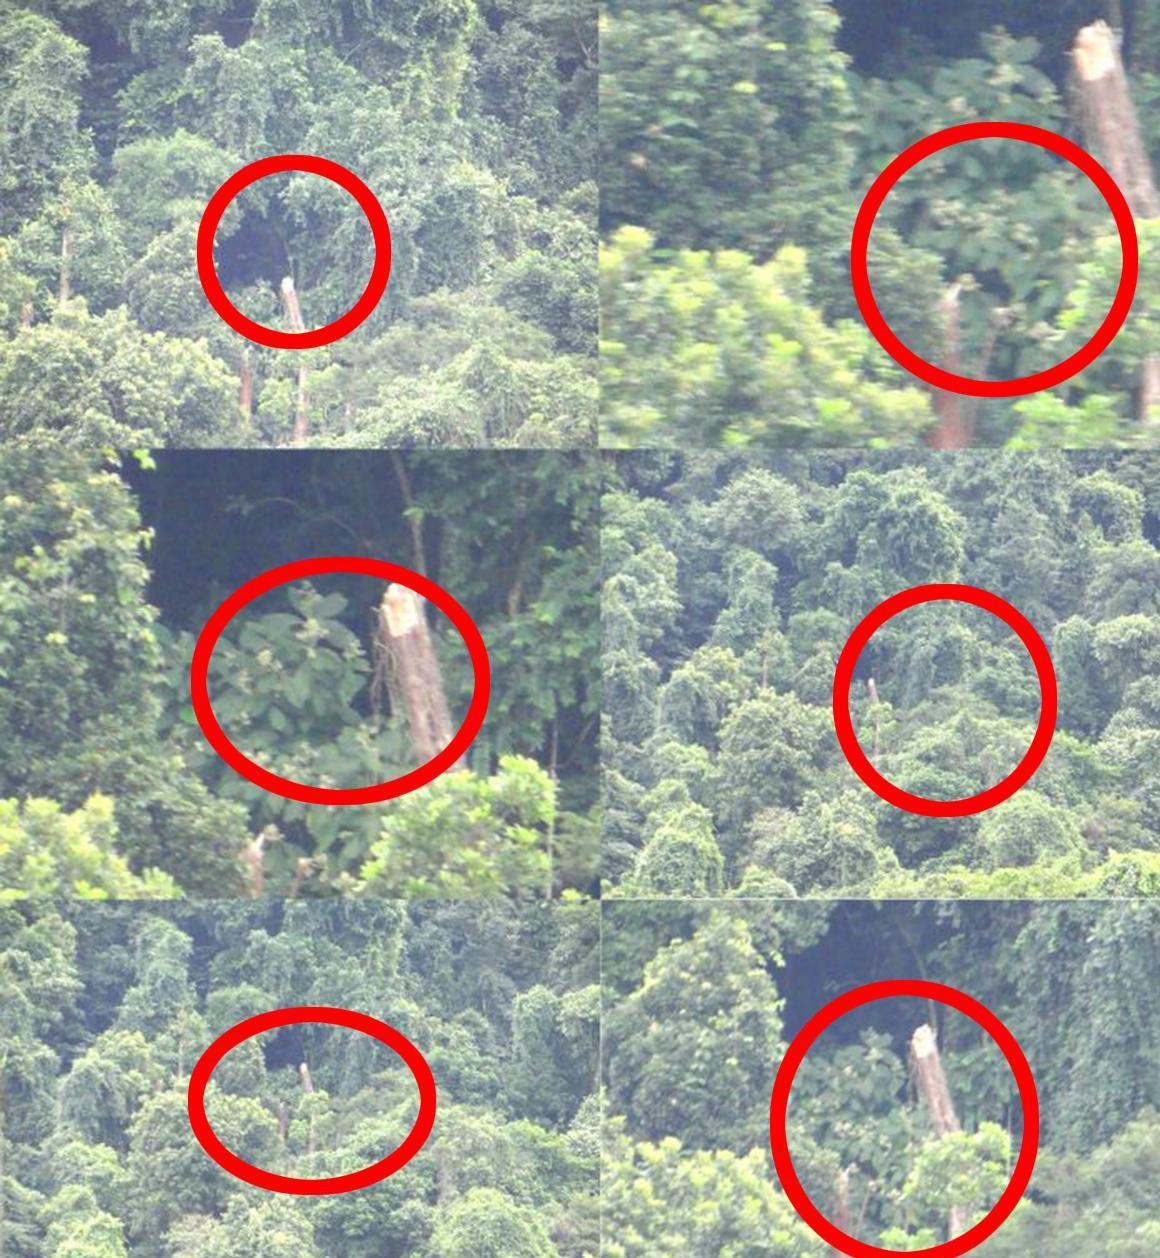 英男子遇大片倒下树木,与5月13日巴西ufo事件相似